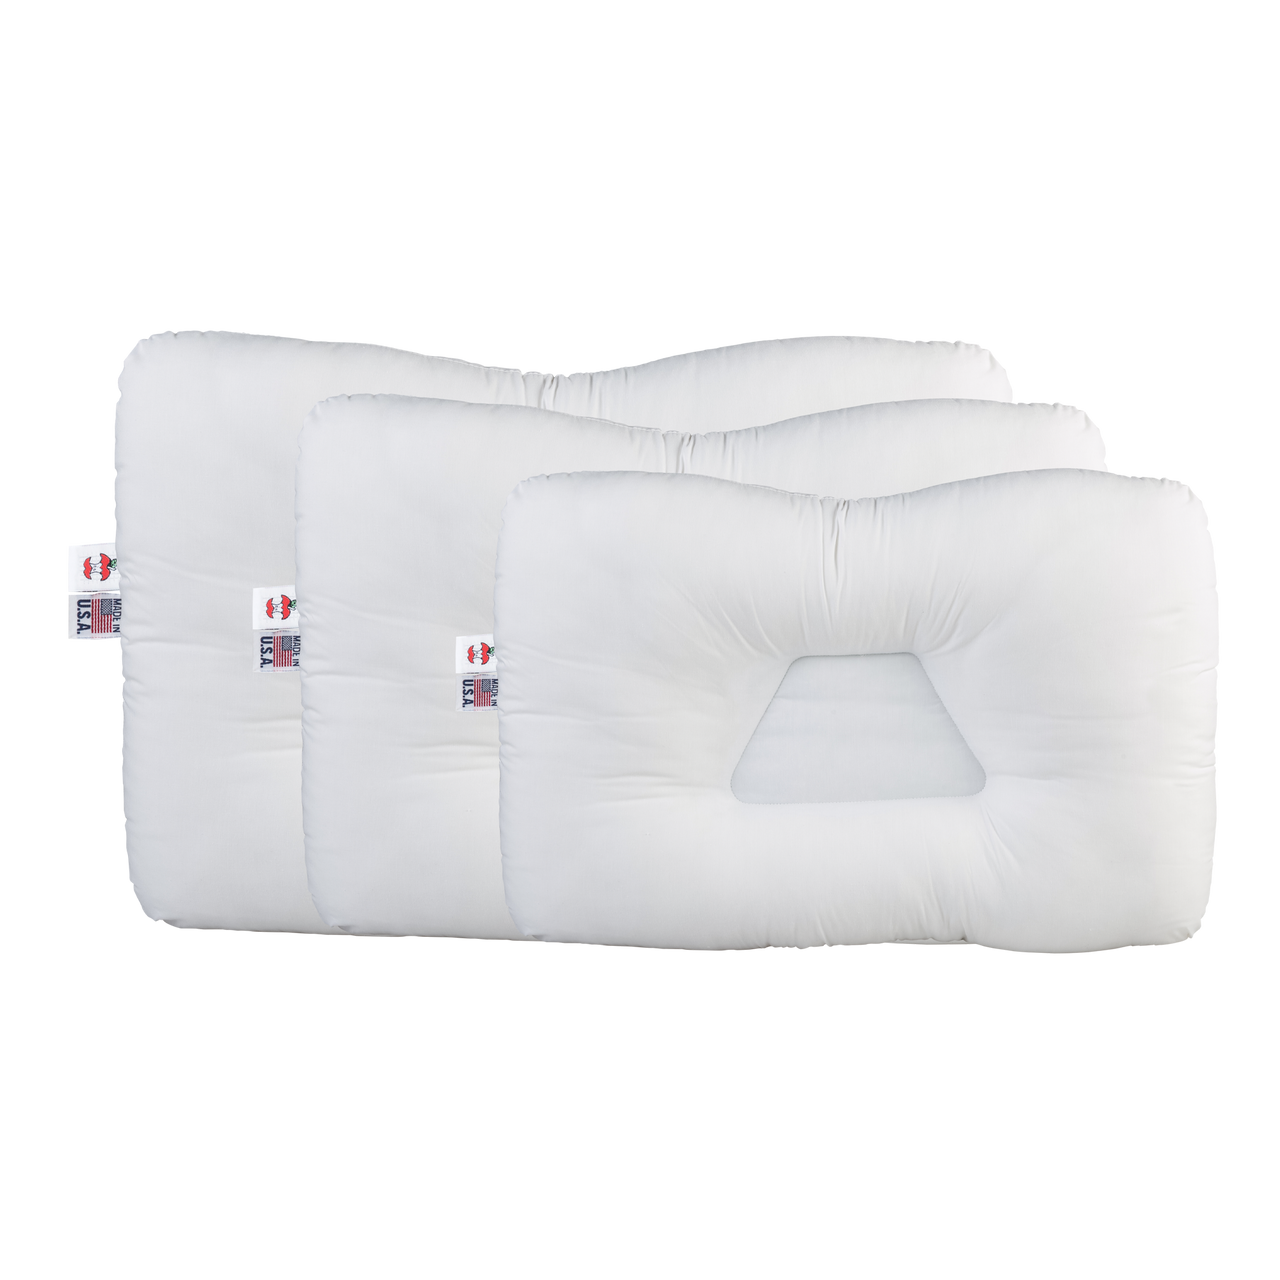 Memory Foam Cervical Pillow, Full Size